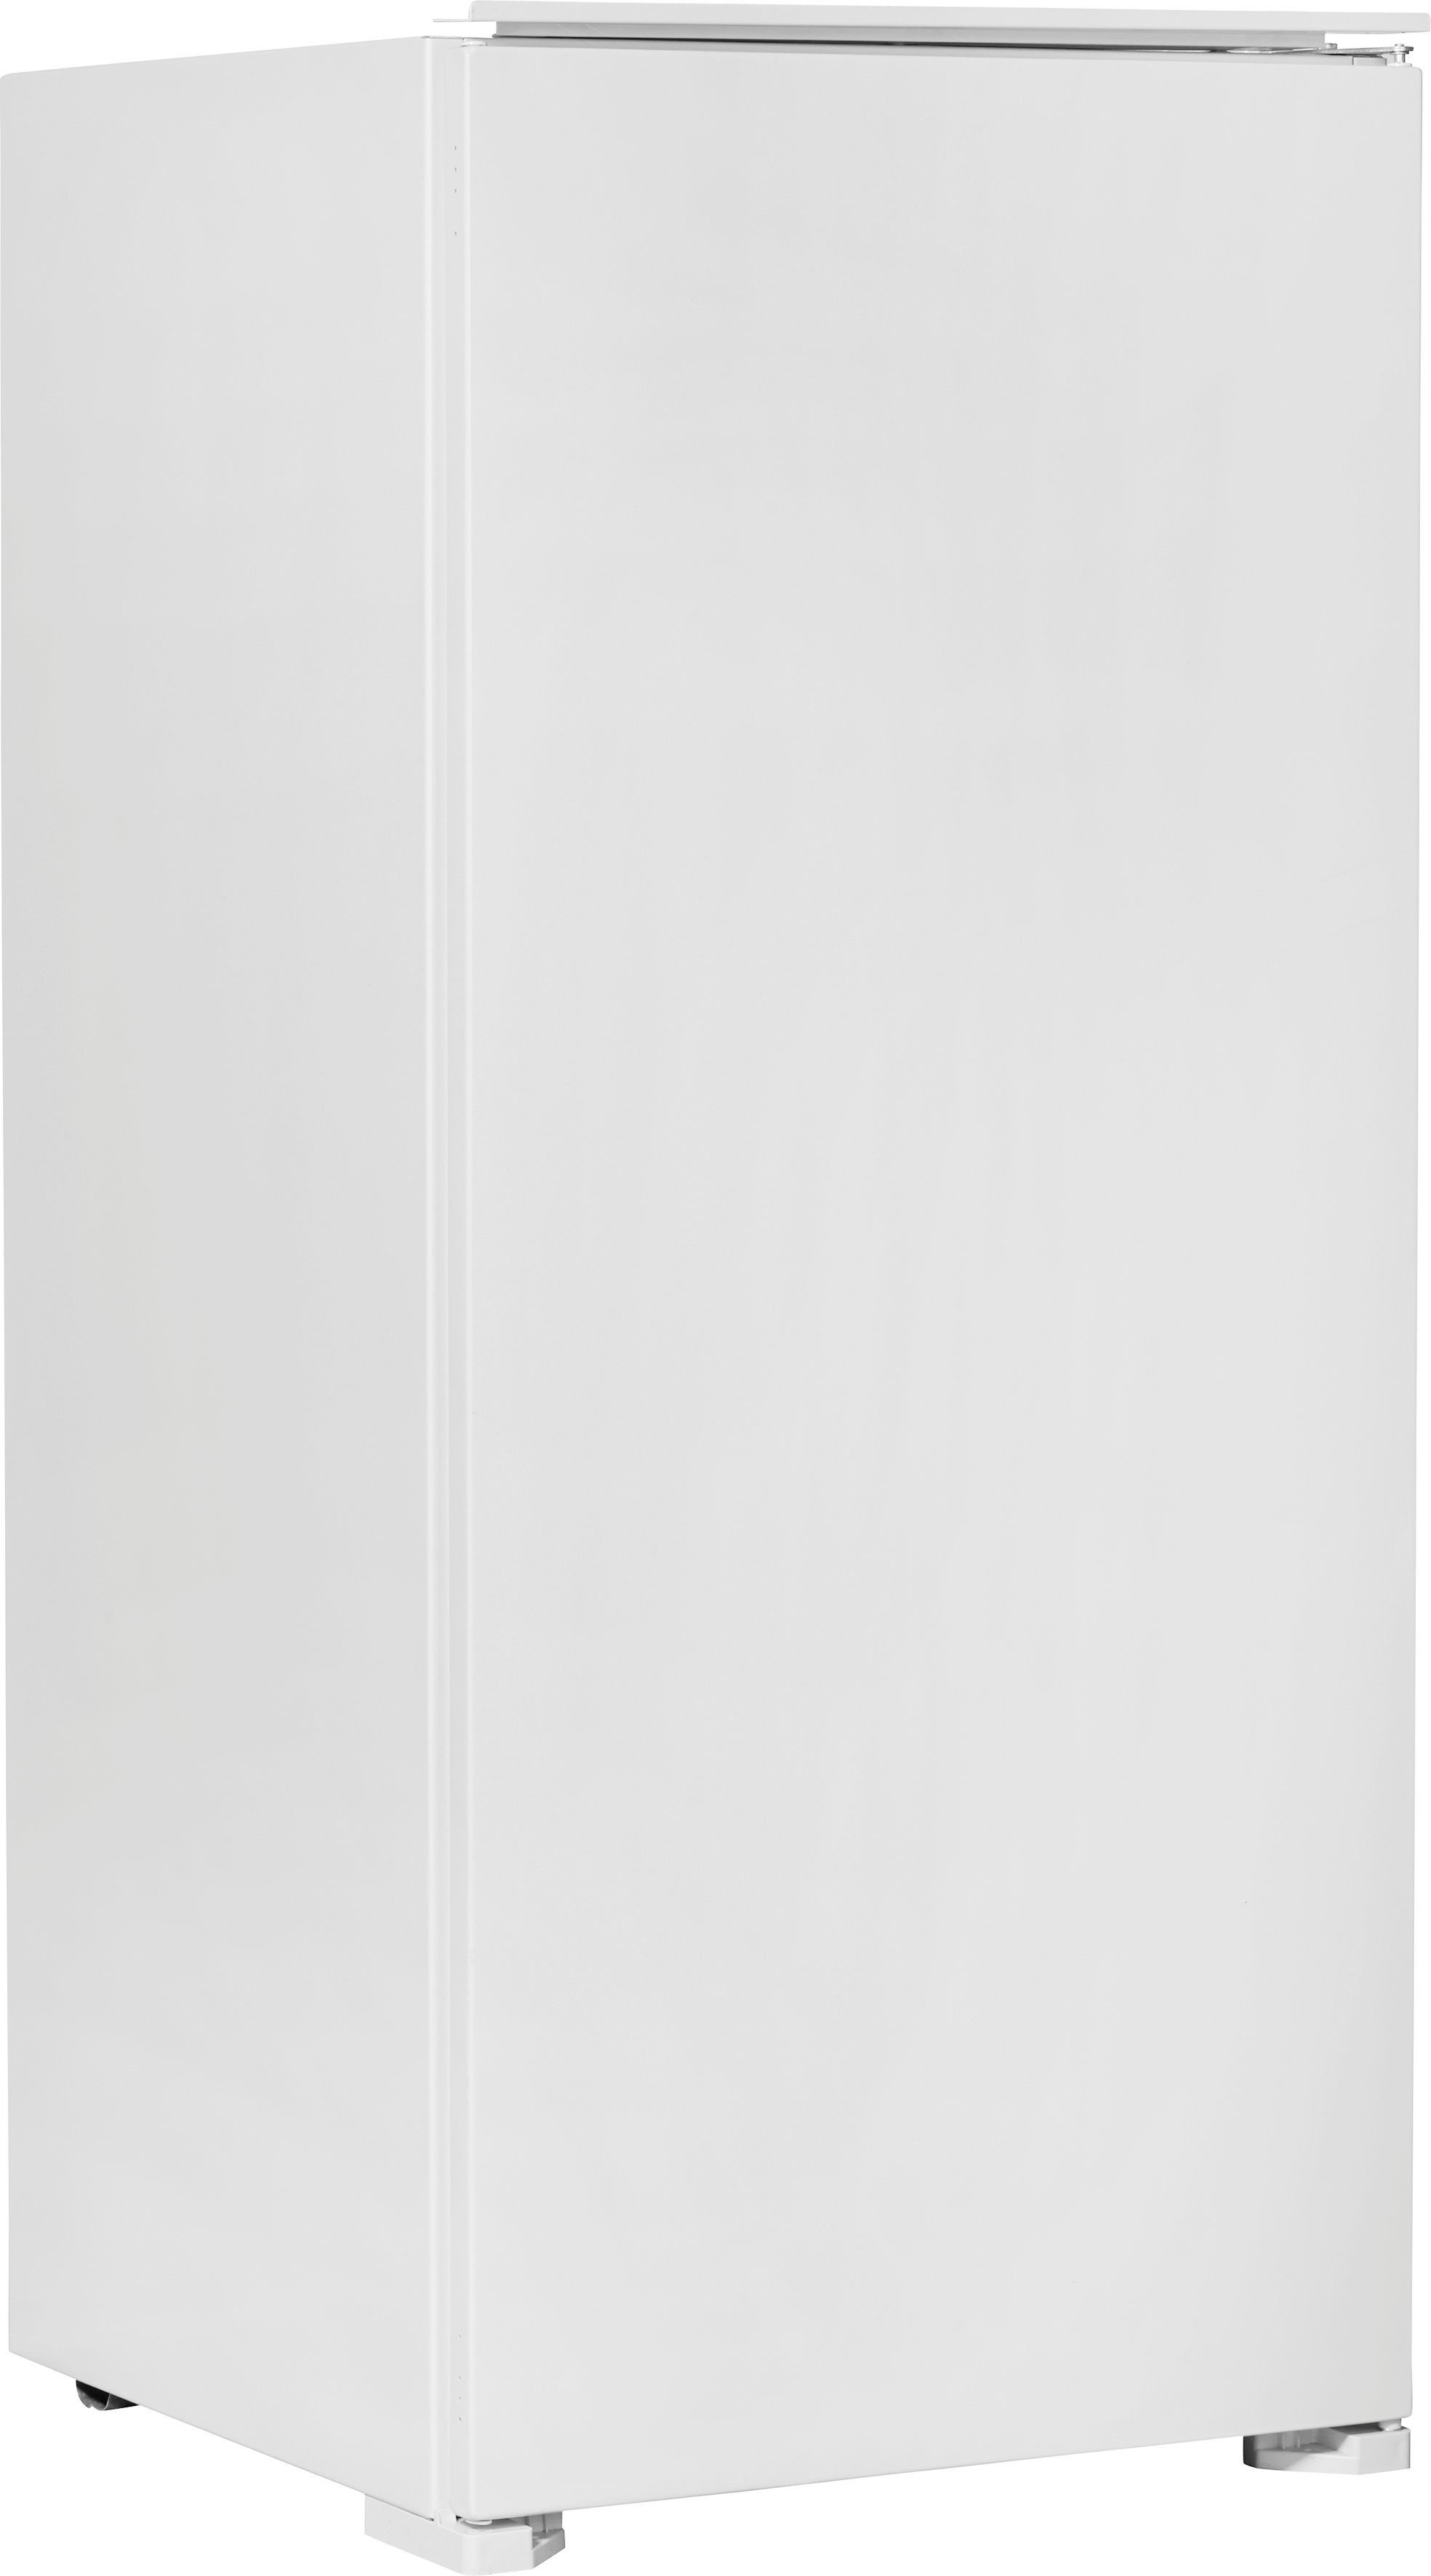 Einbaukühlschrank 54 Hanseatic hoch, cm cm breit 123 HEKS12254F,